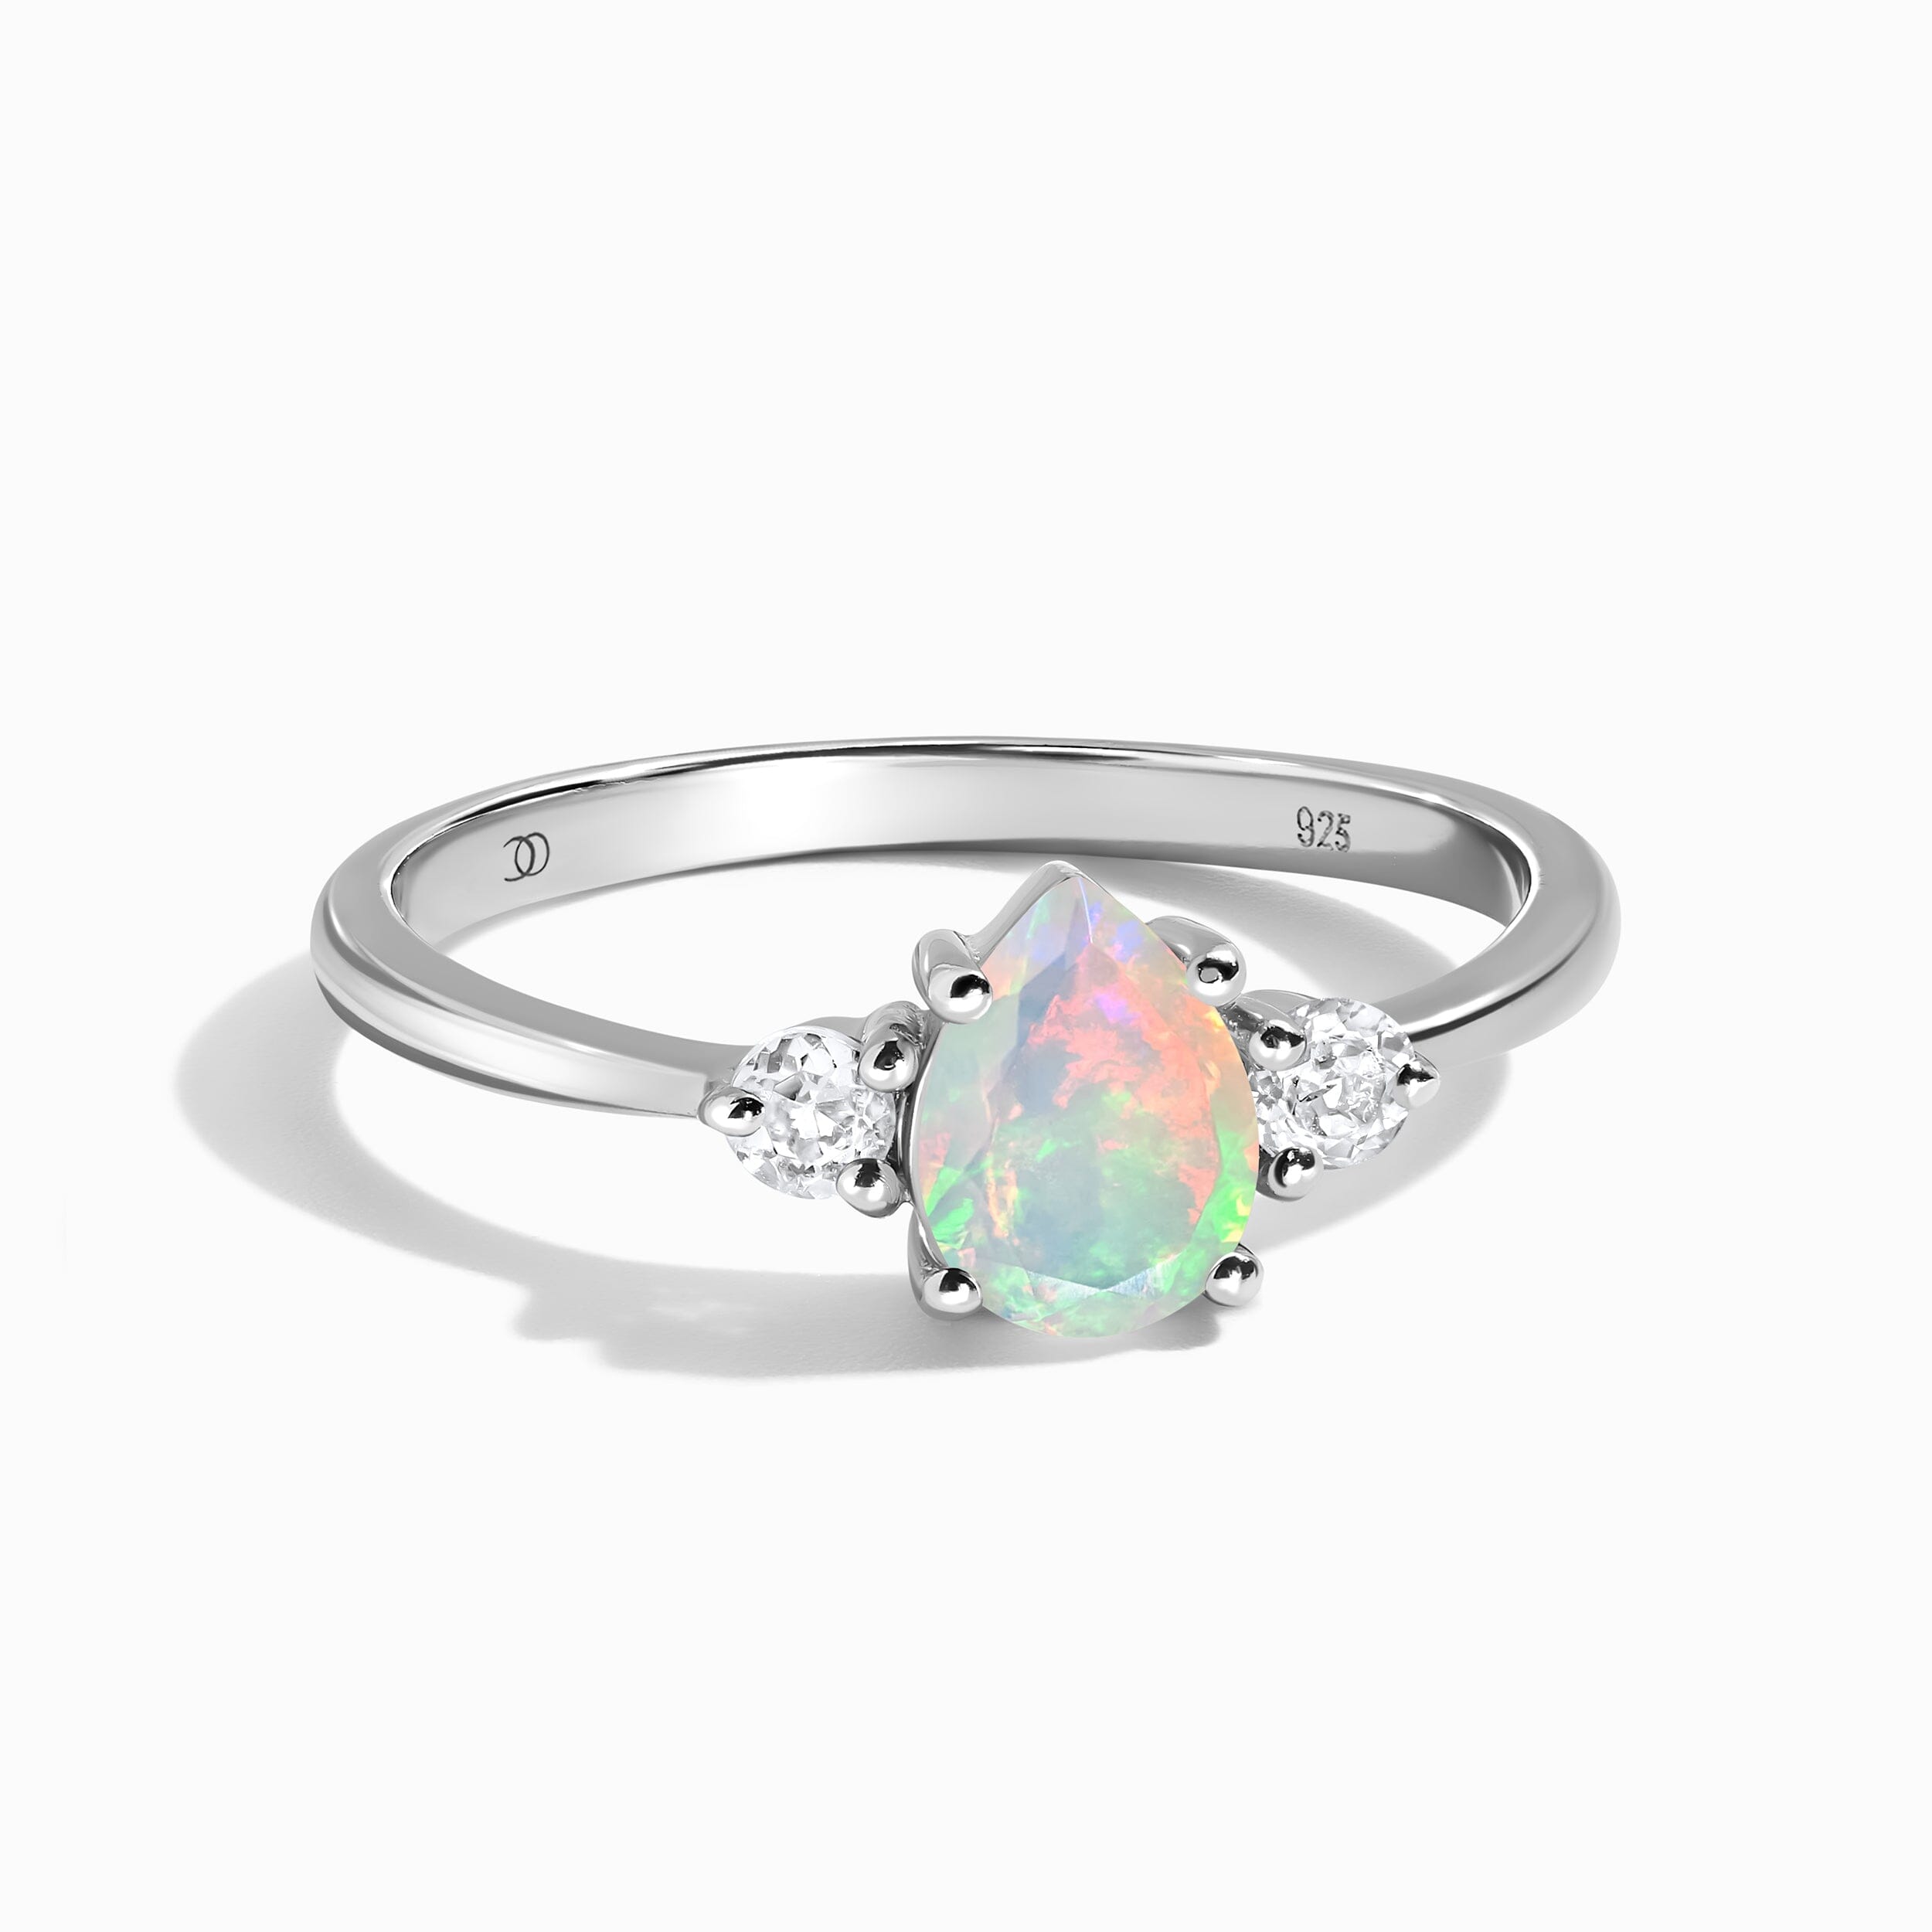 Buy Opal Rings Online at Best Price | GemPundit